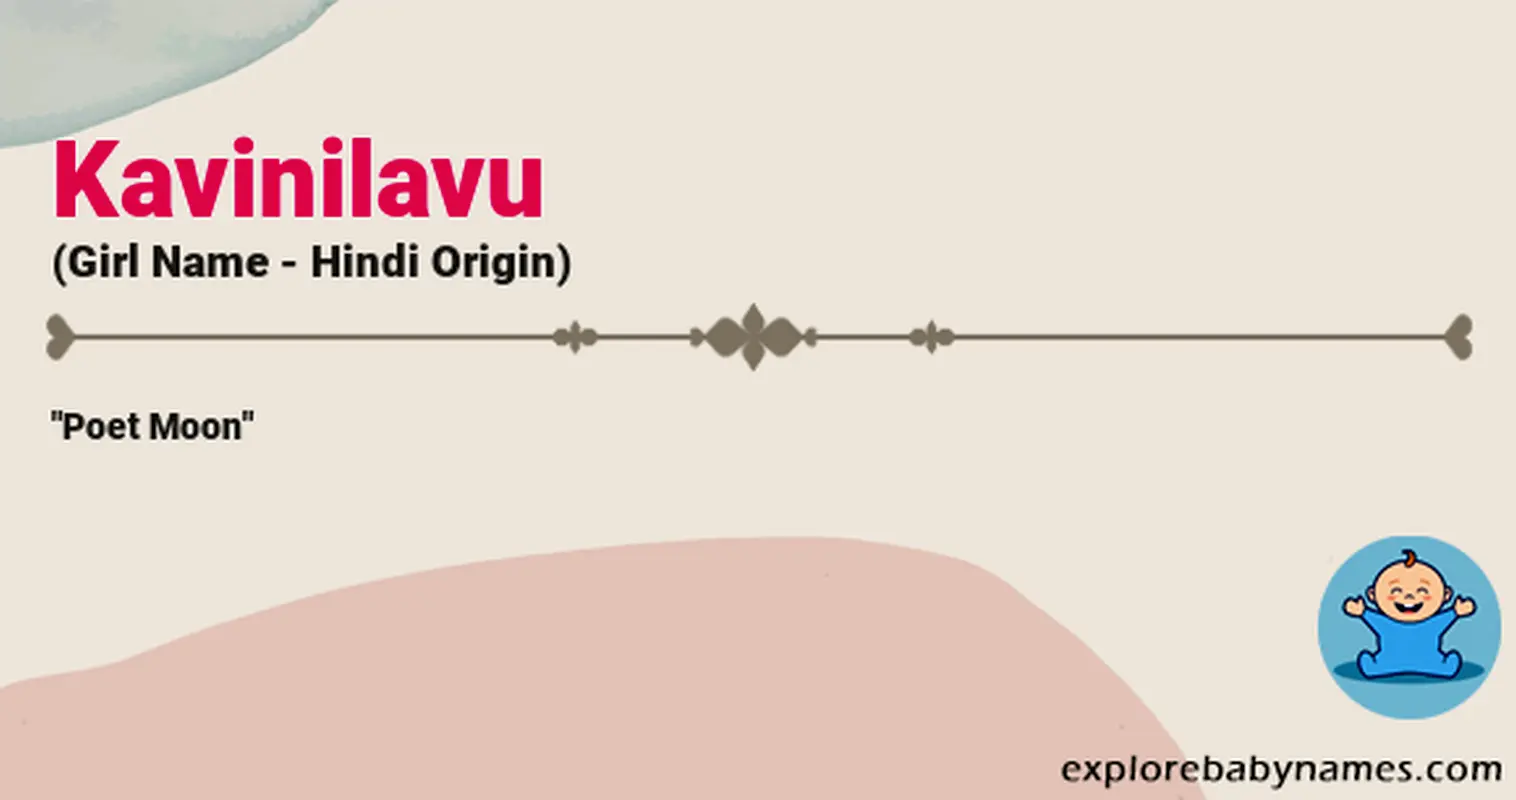 Meaning of Kavinilavu